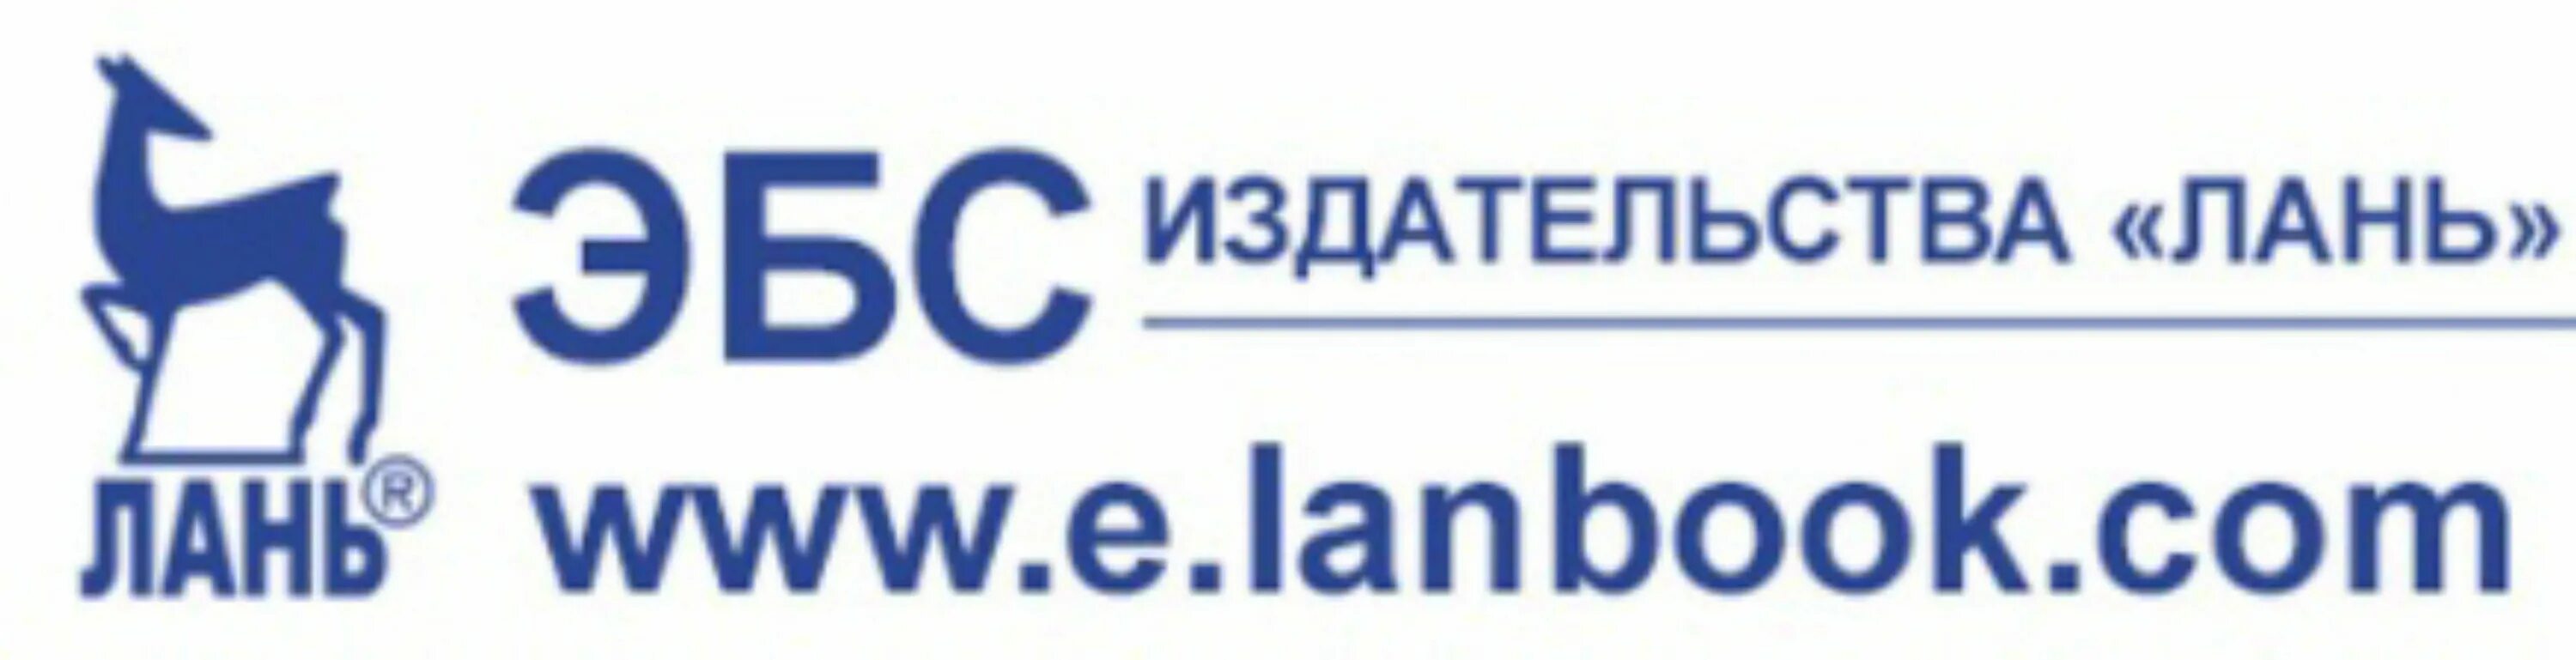 Http e lanbook com. Лань электронно-библиотечная система. ЭБС Лань. Издательство Лань. ЭБС Лань логотип.